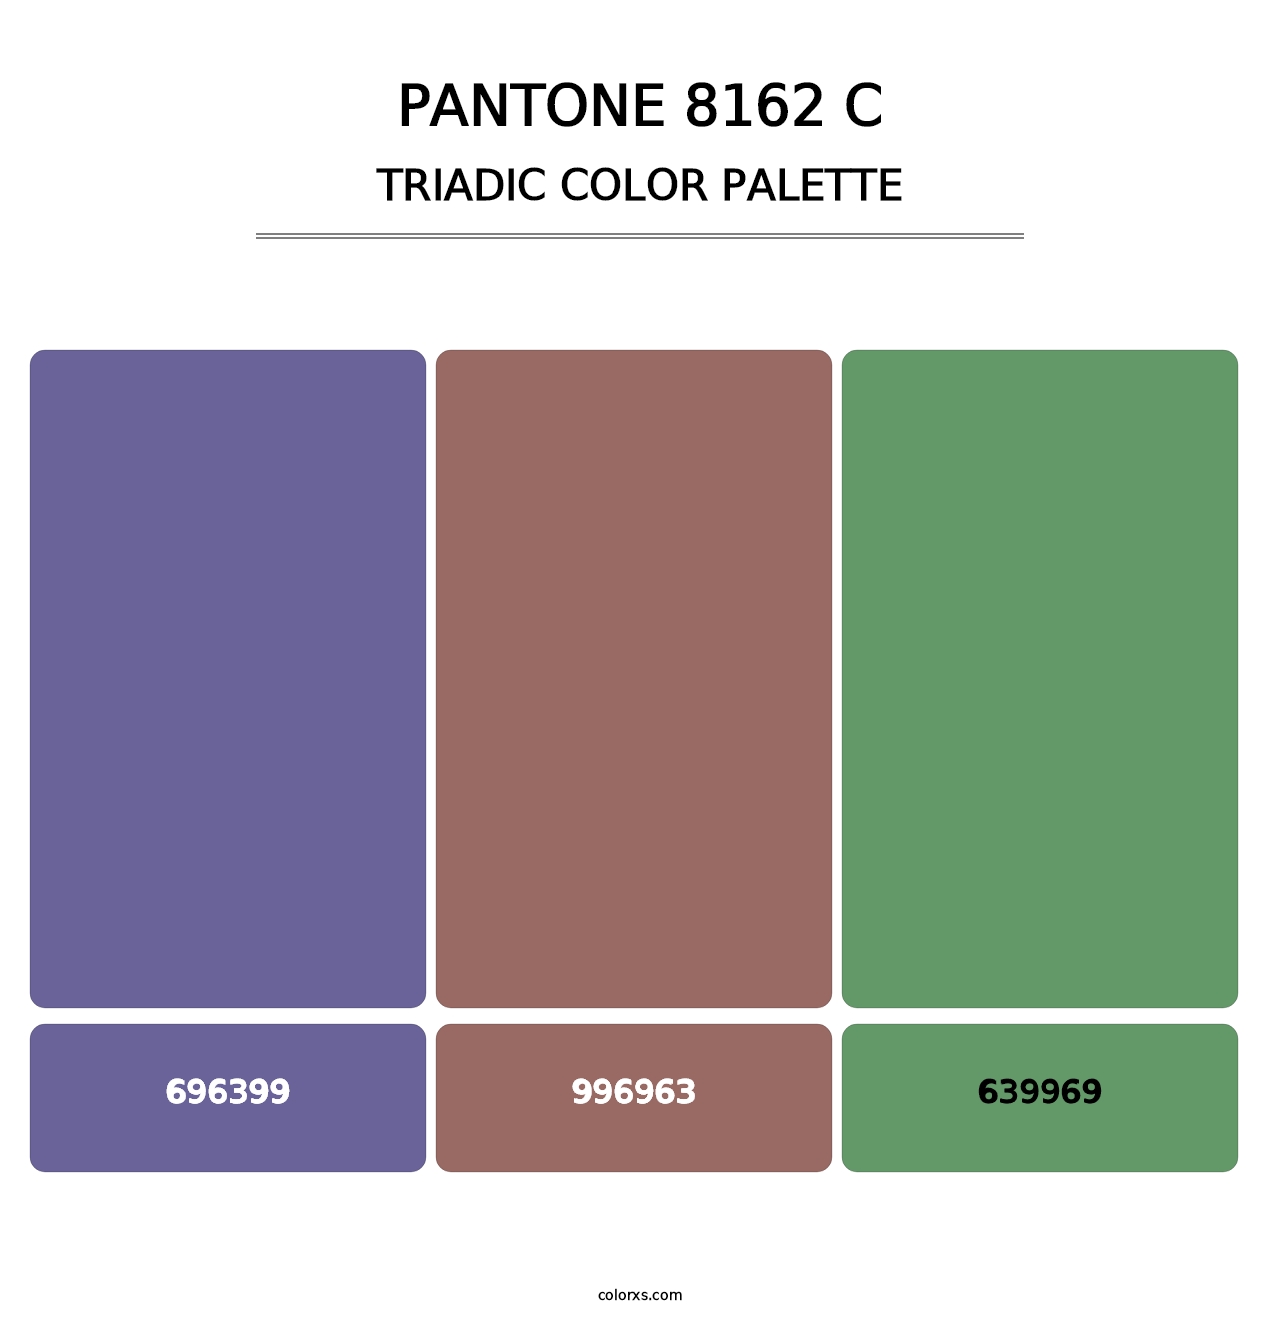 PANTONE 8162 C - Triadic Color Palette